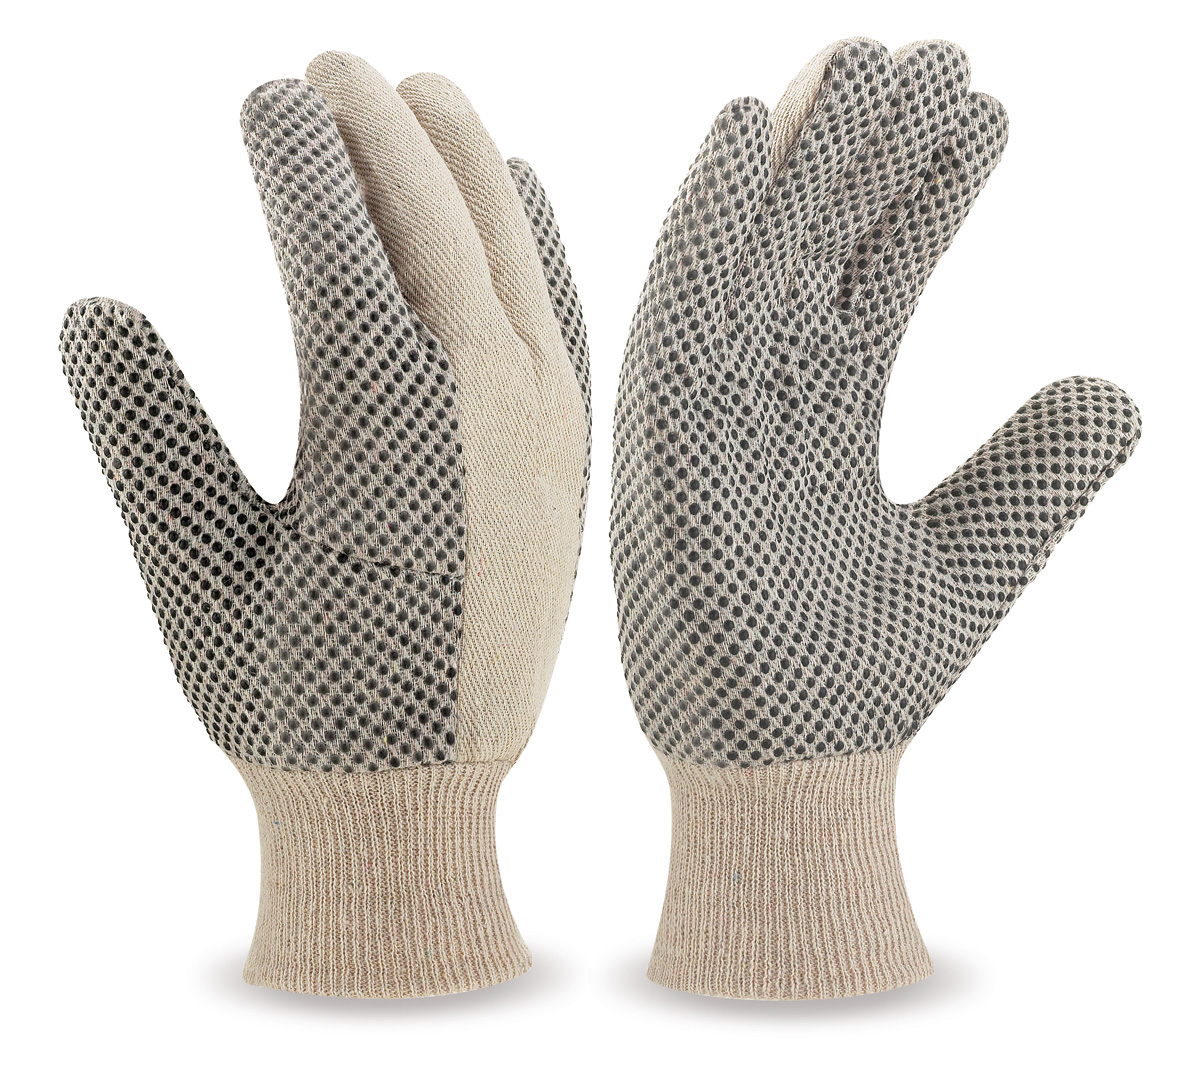 688-G Guantes de Trabajo Algodón Guante de lona de algodón, con puntos de PVC en palma y dedos.